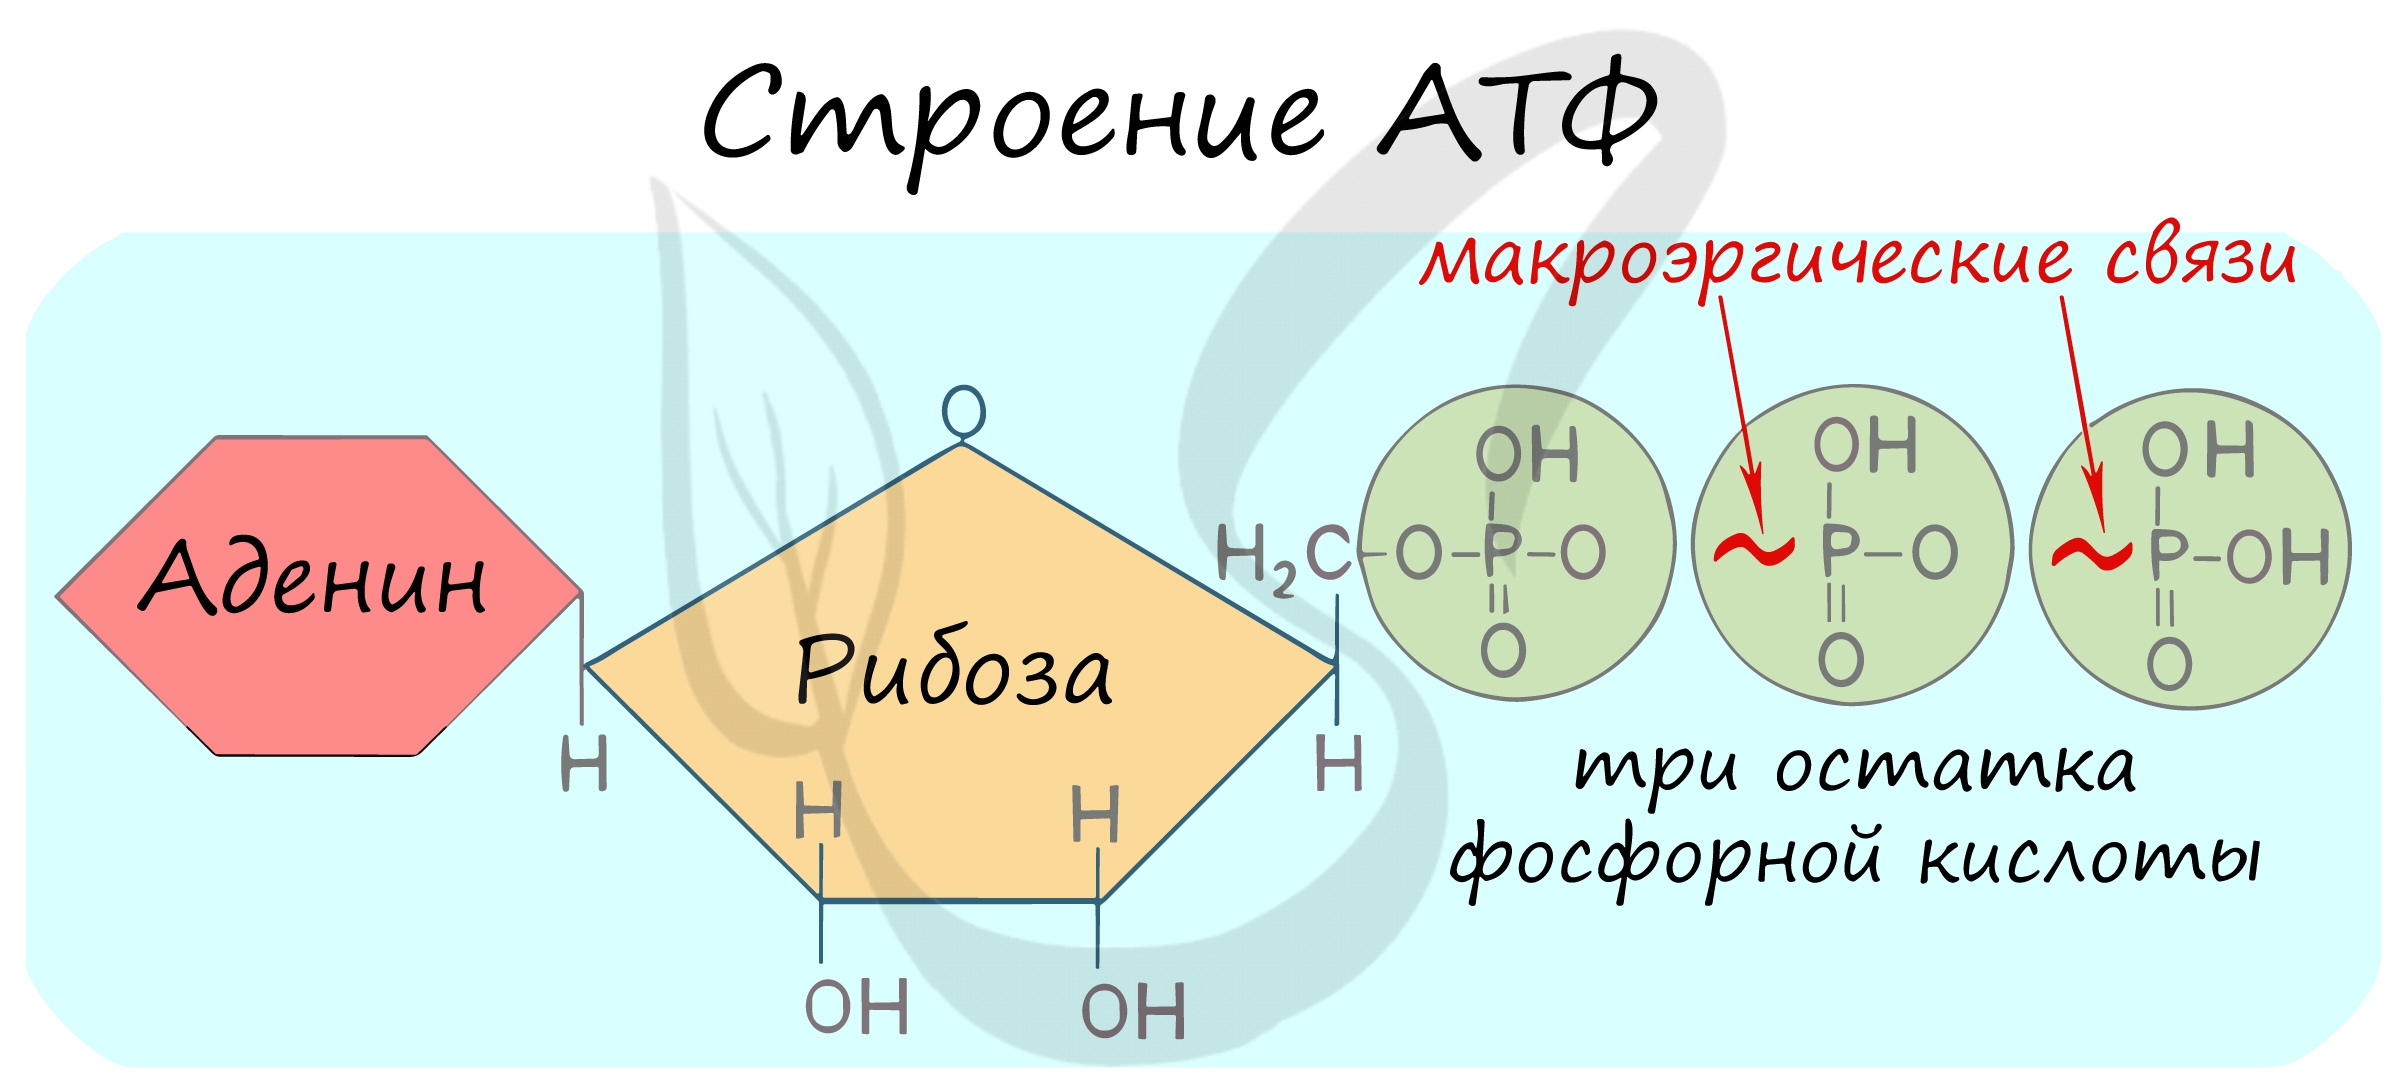 3 строение атф. Макроэргические связи в молекуле АТФ. Формула АТФ С макроэргическими связями. Макроэргическое соединение АТФ. Гидролиз макроэргических связей молекулы АТФ.